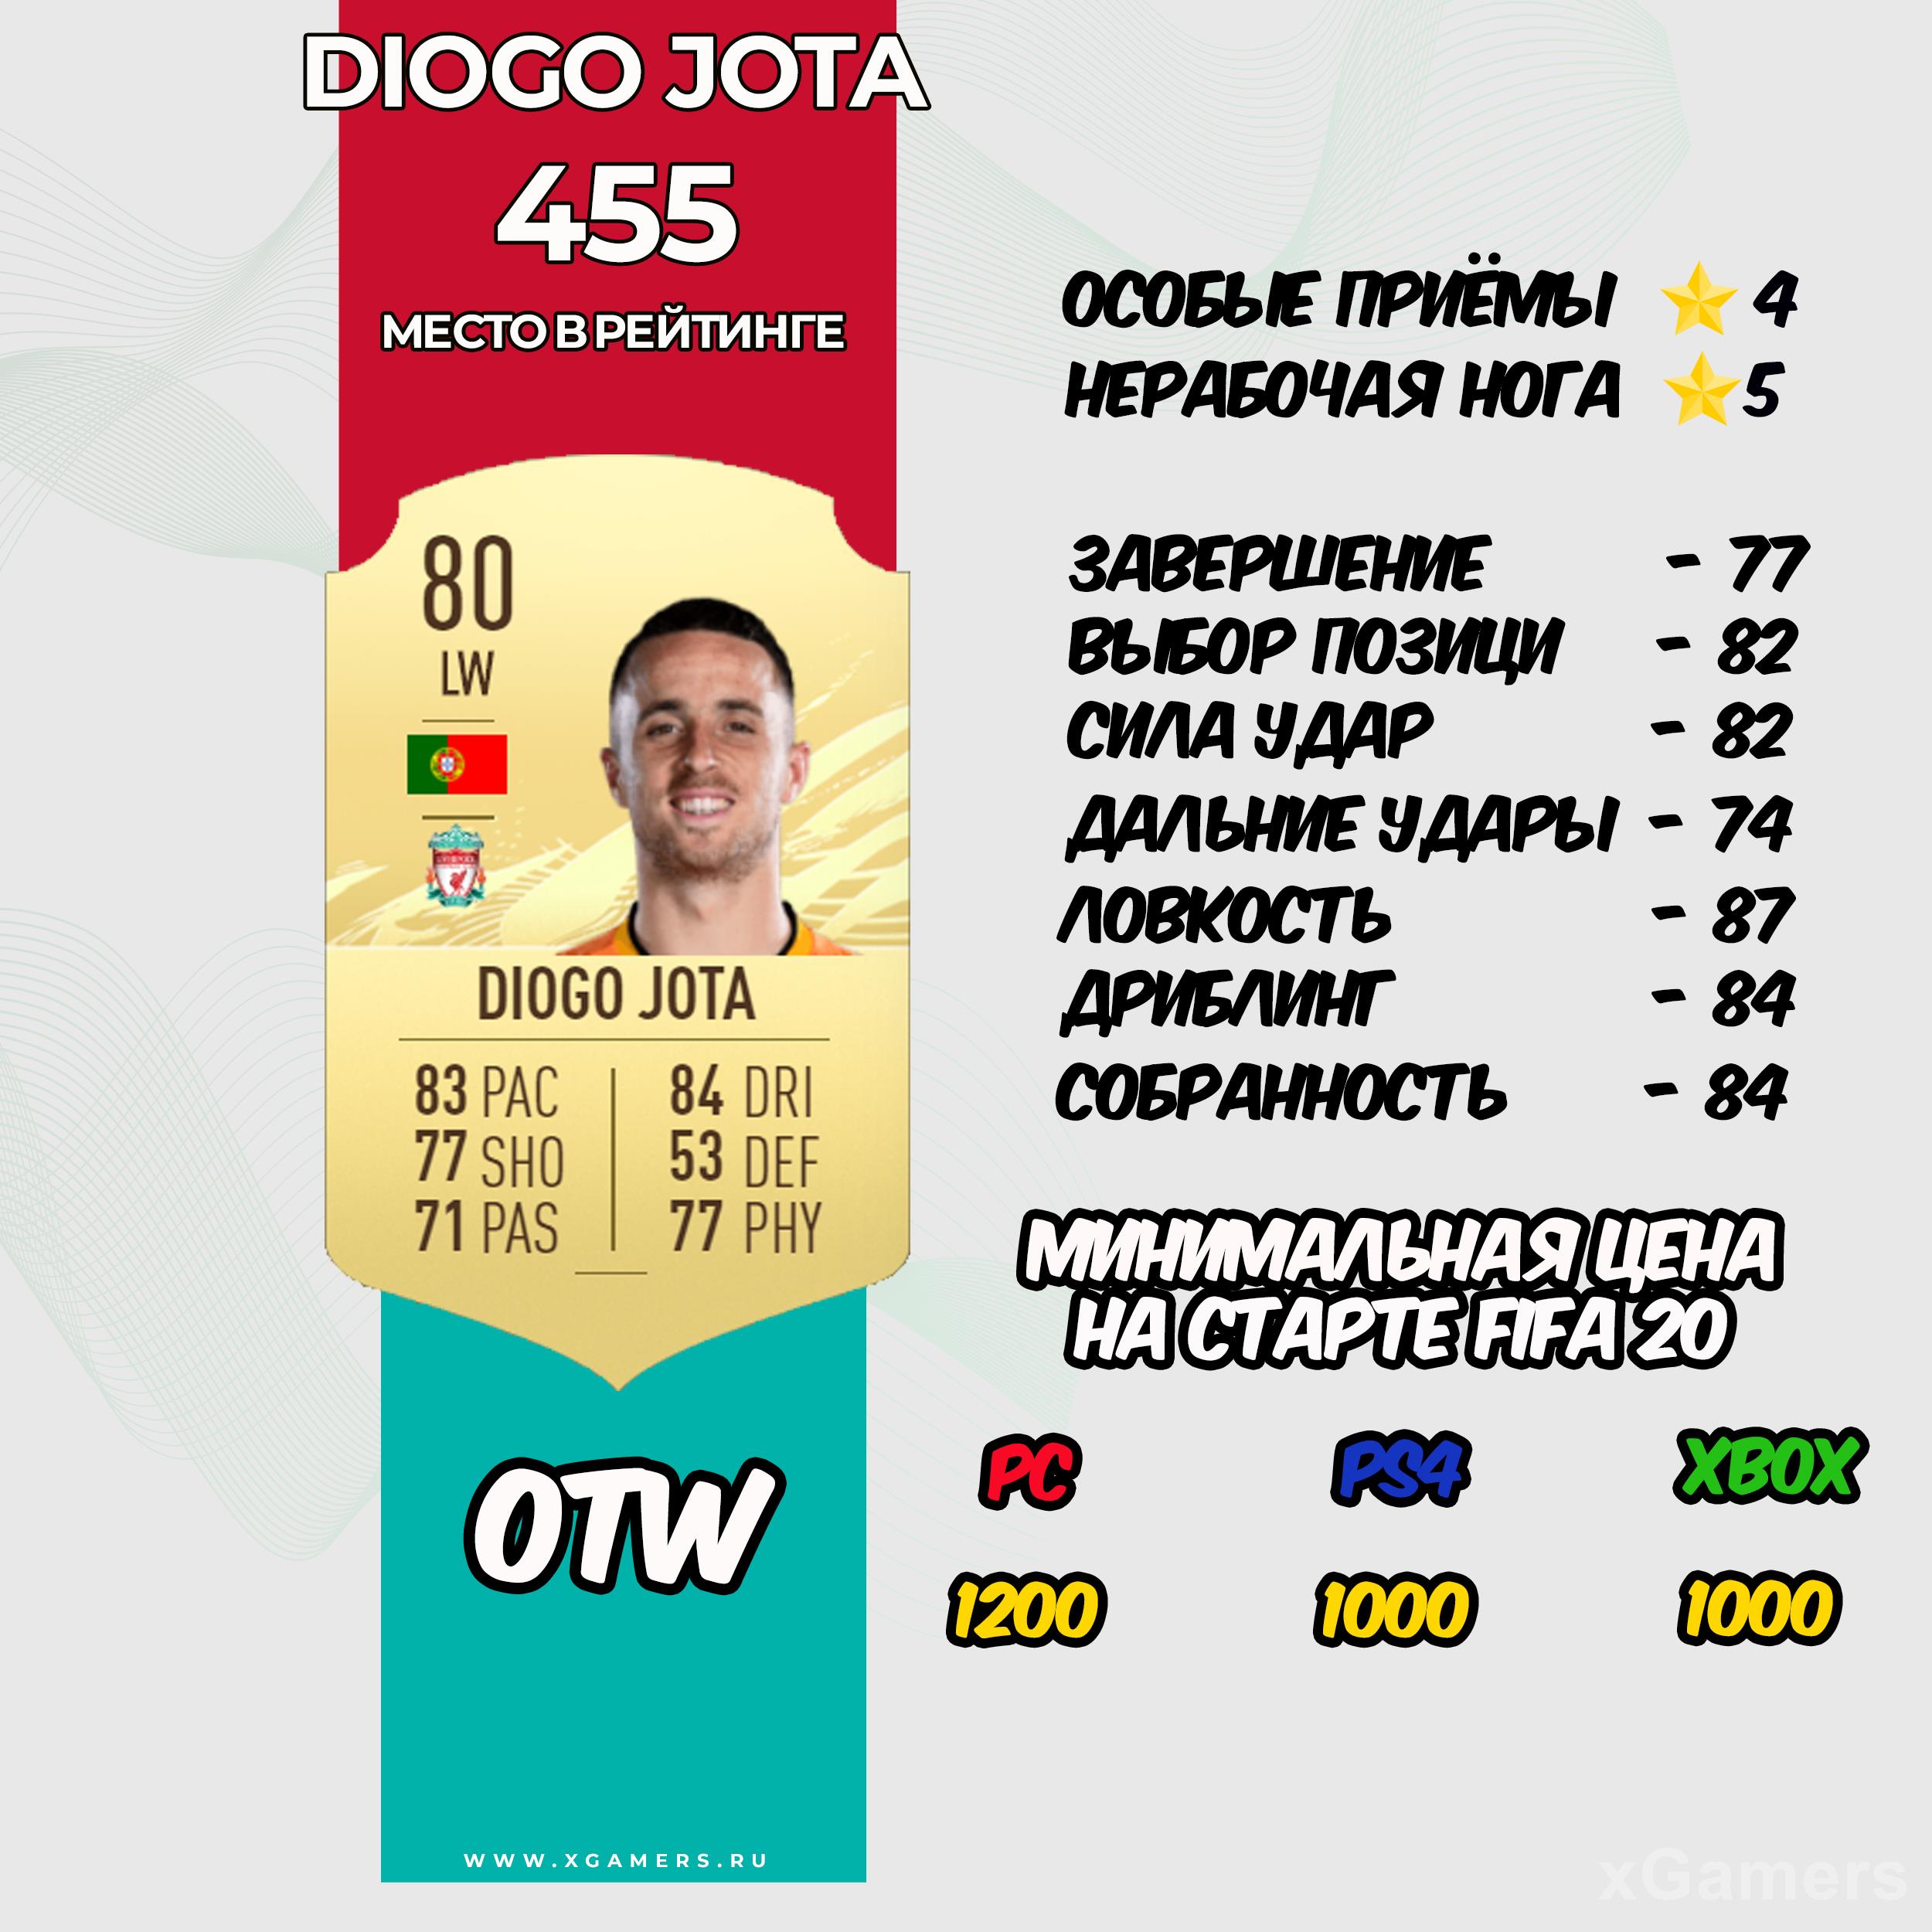 Diogo Jota - место в рейтинге 455